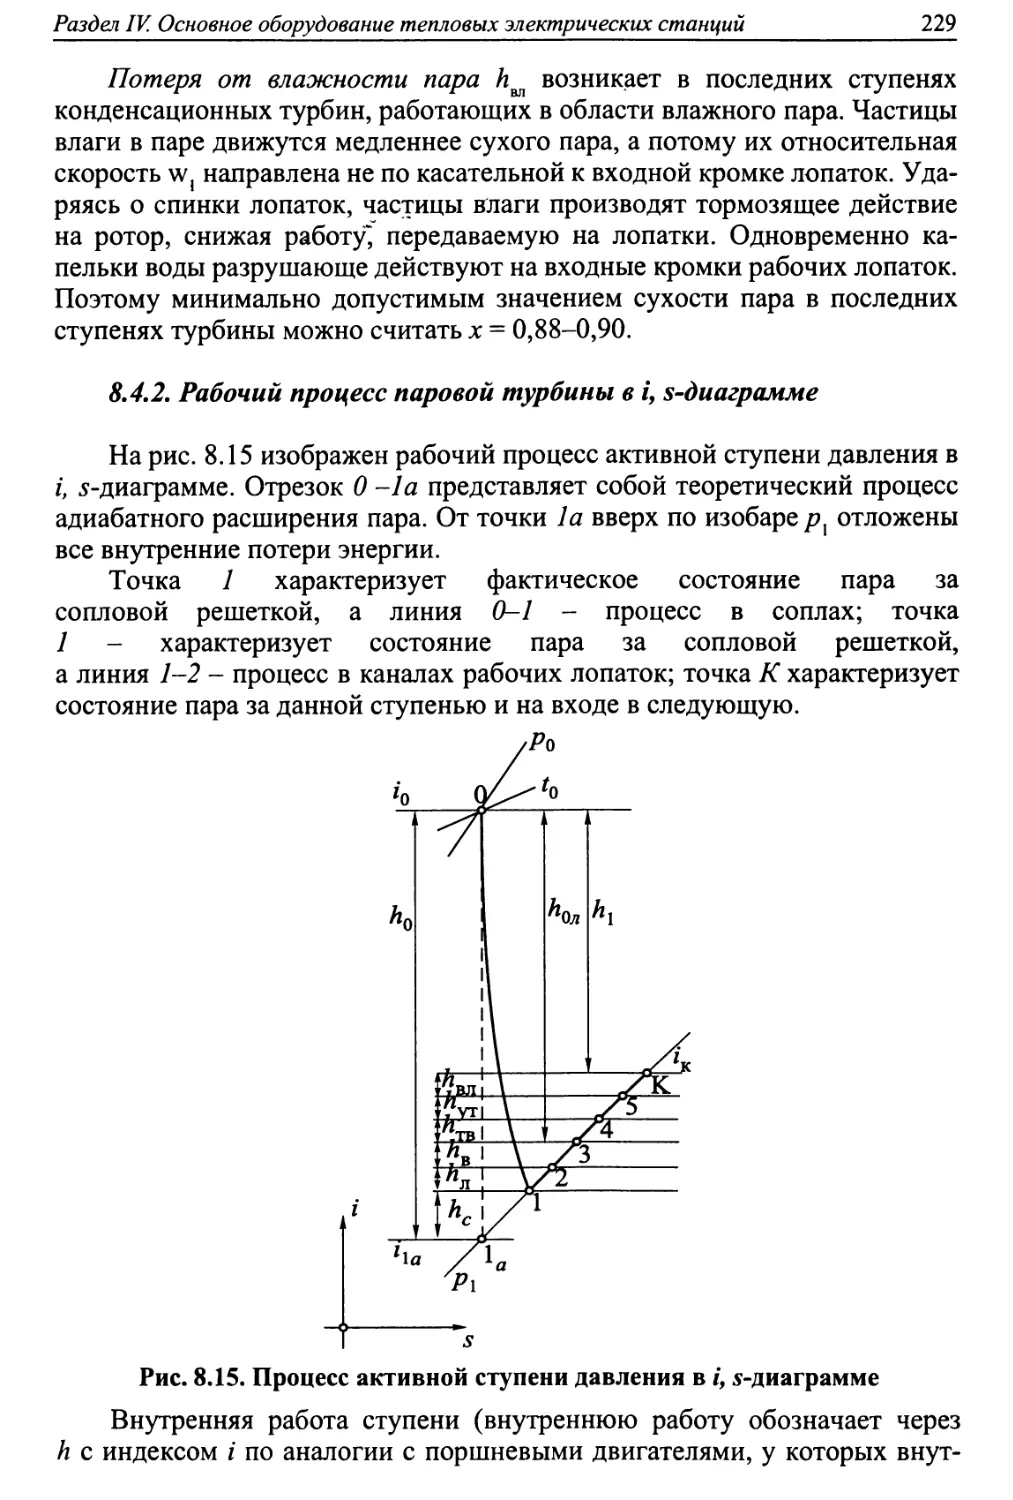 8.4.2. Рабочий процесс паровой турбины в i,s- диаграмме